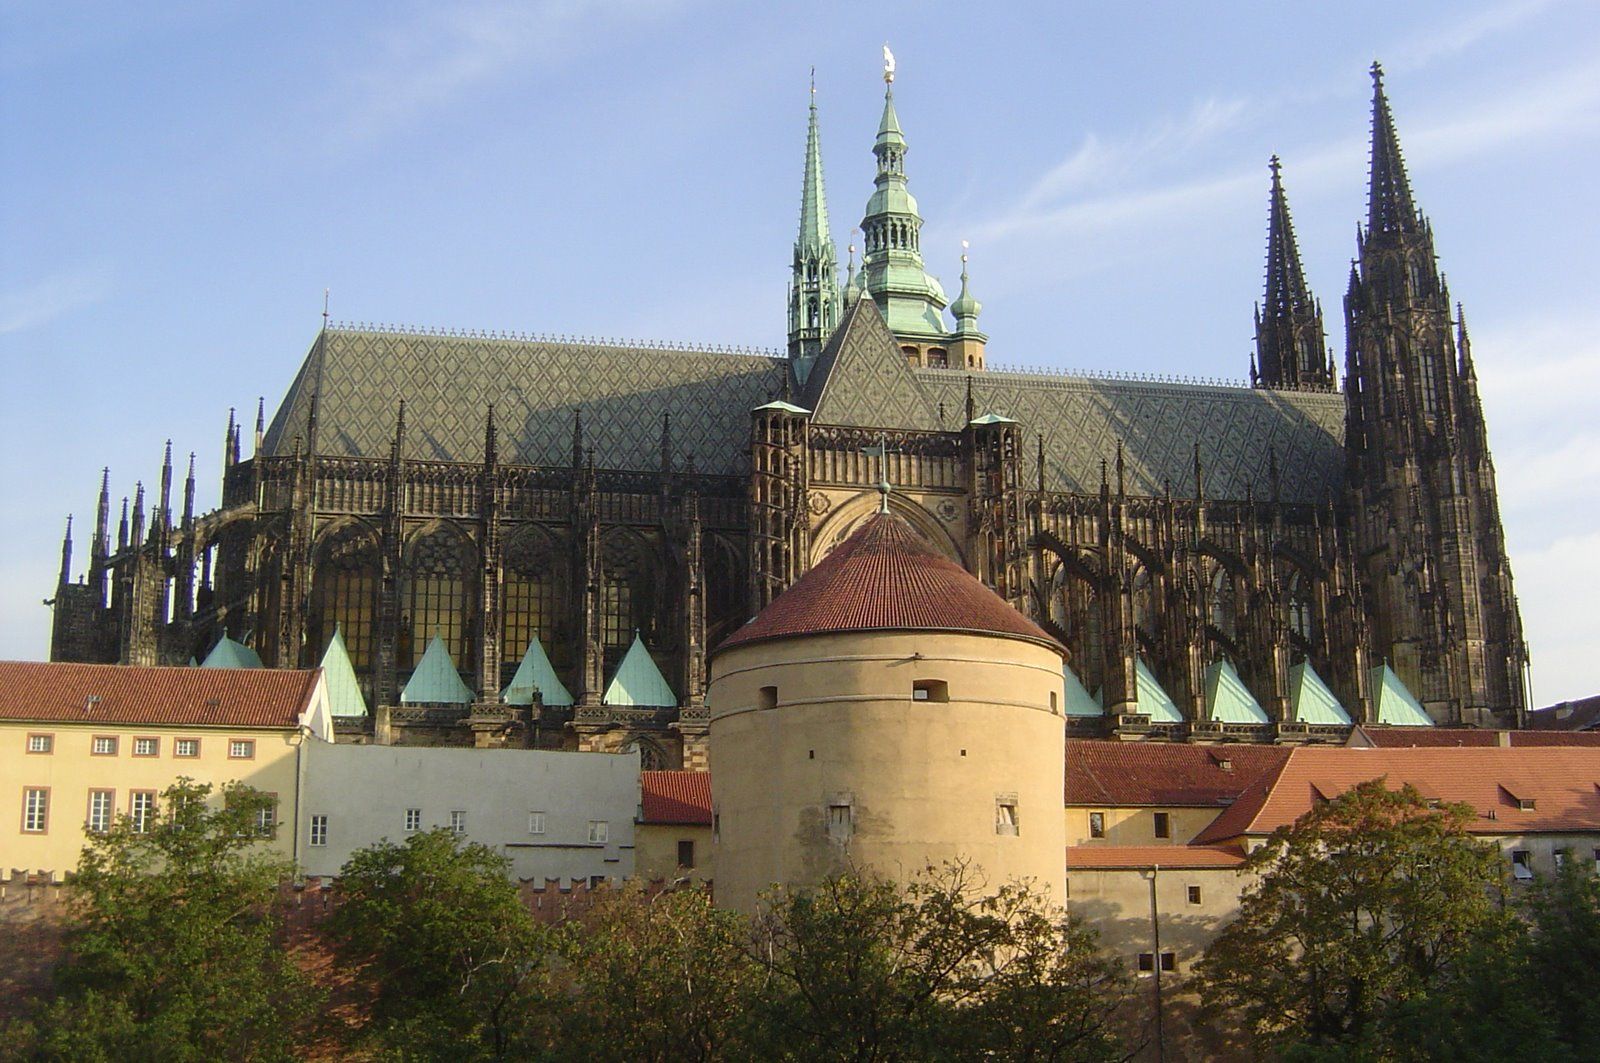 Mihulka lőportorony - Prágai vár